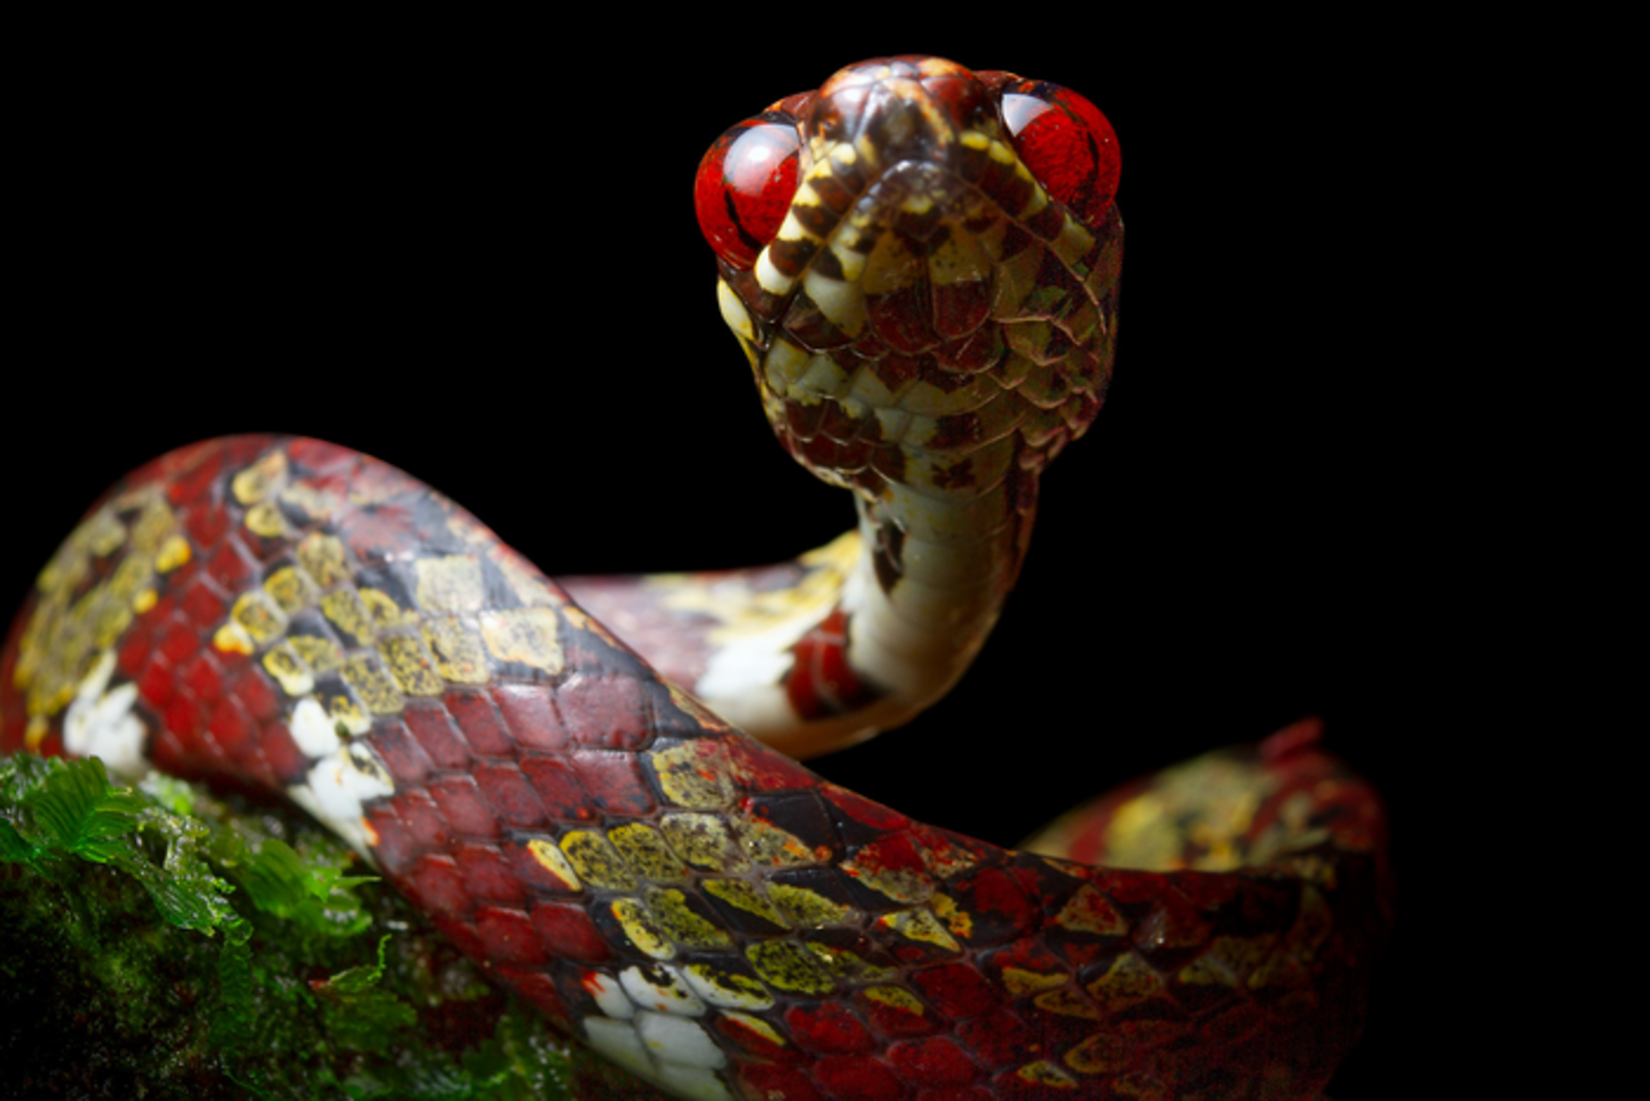 Ce serpent (Sibon canopy) est nommé en l'honneur des réserves Canopy Family qui organise des séjours d'écotourisme responsable notamment à El Valle de Antón, dans la province de Coclé, au Panama. © Alejandro Arteaga